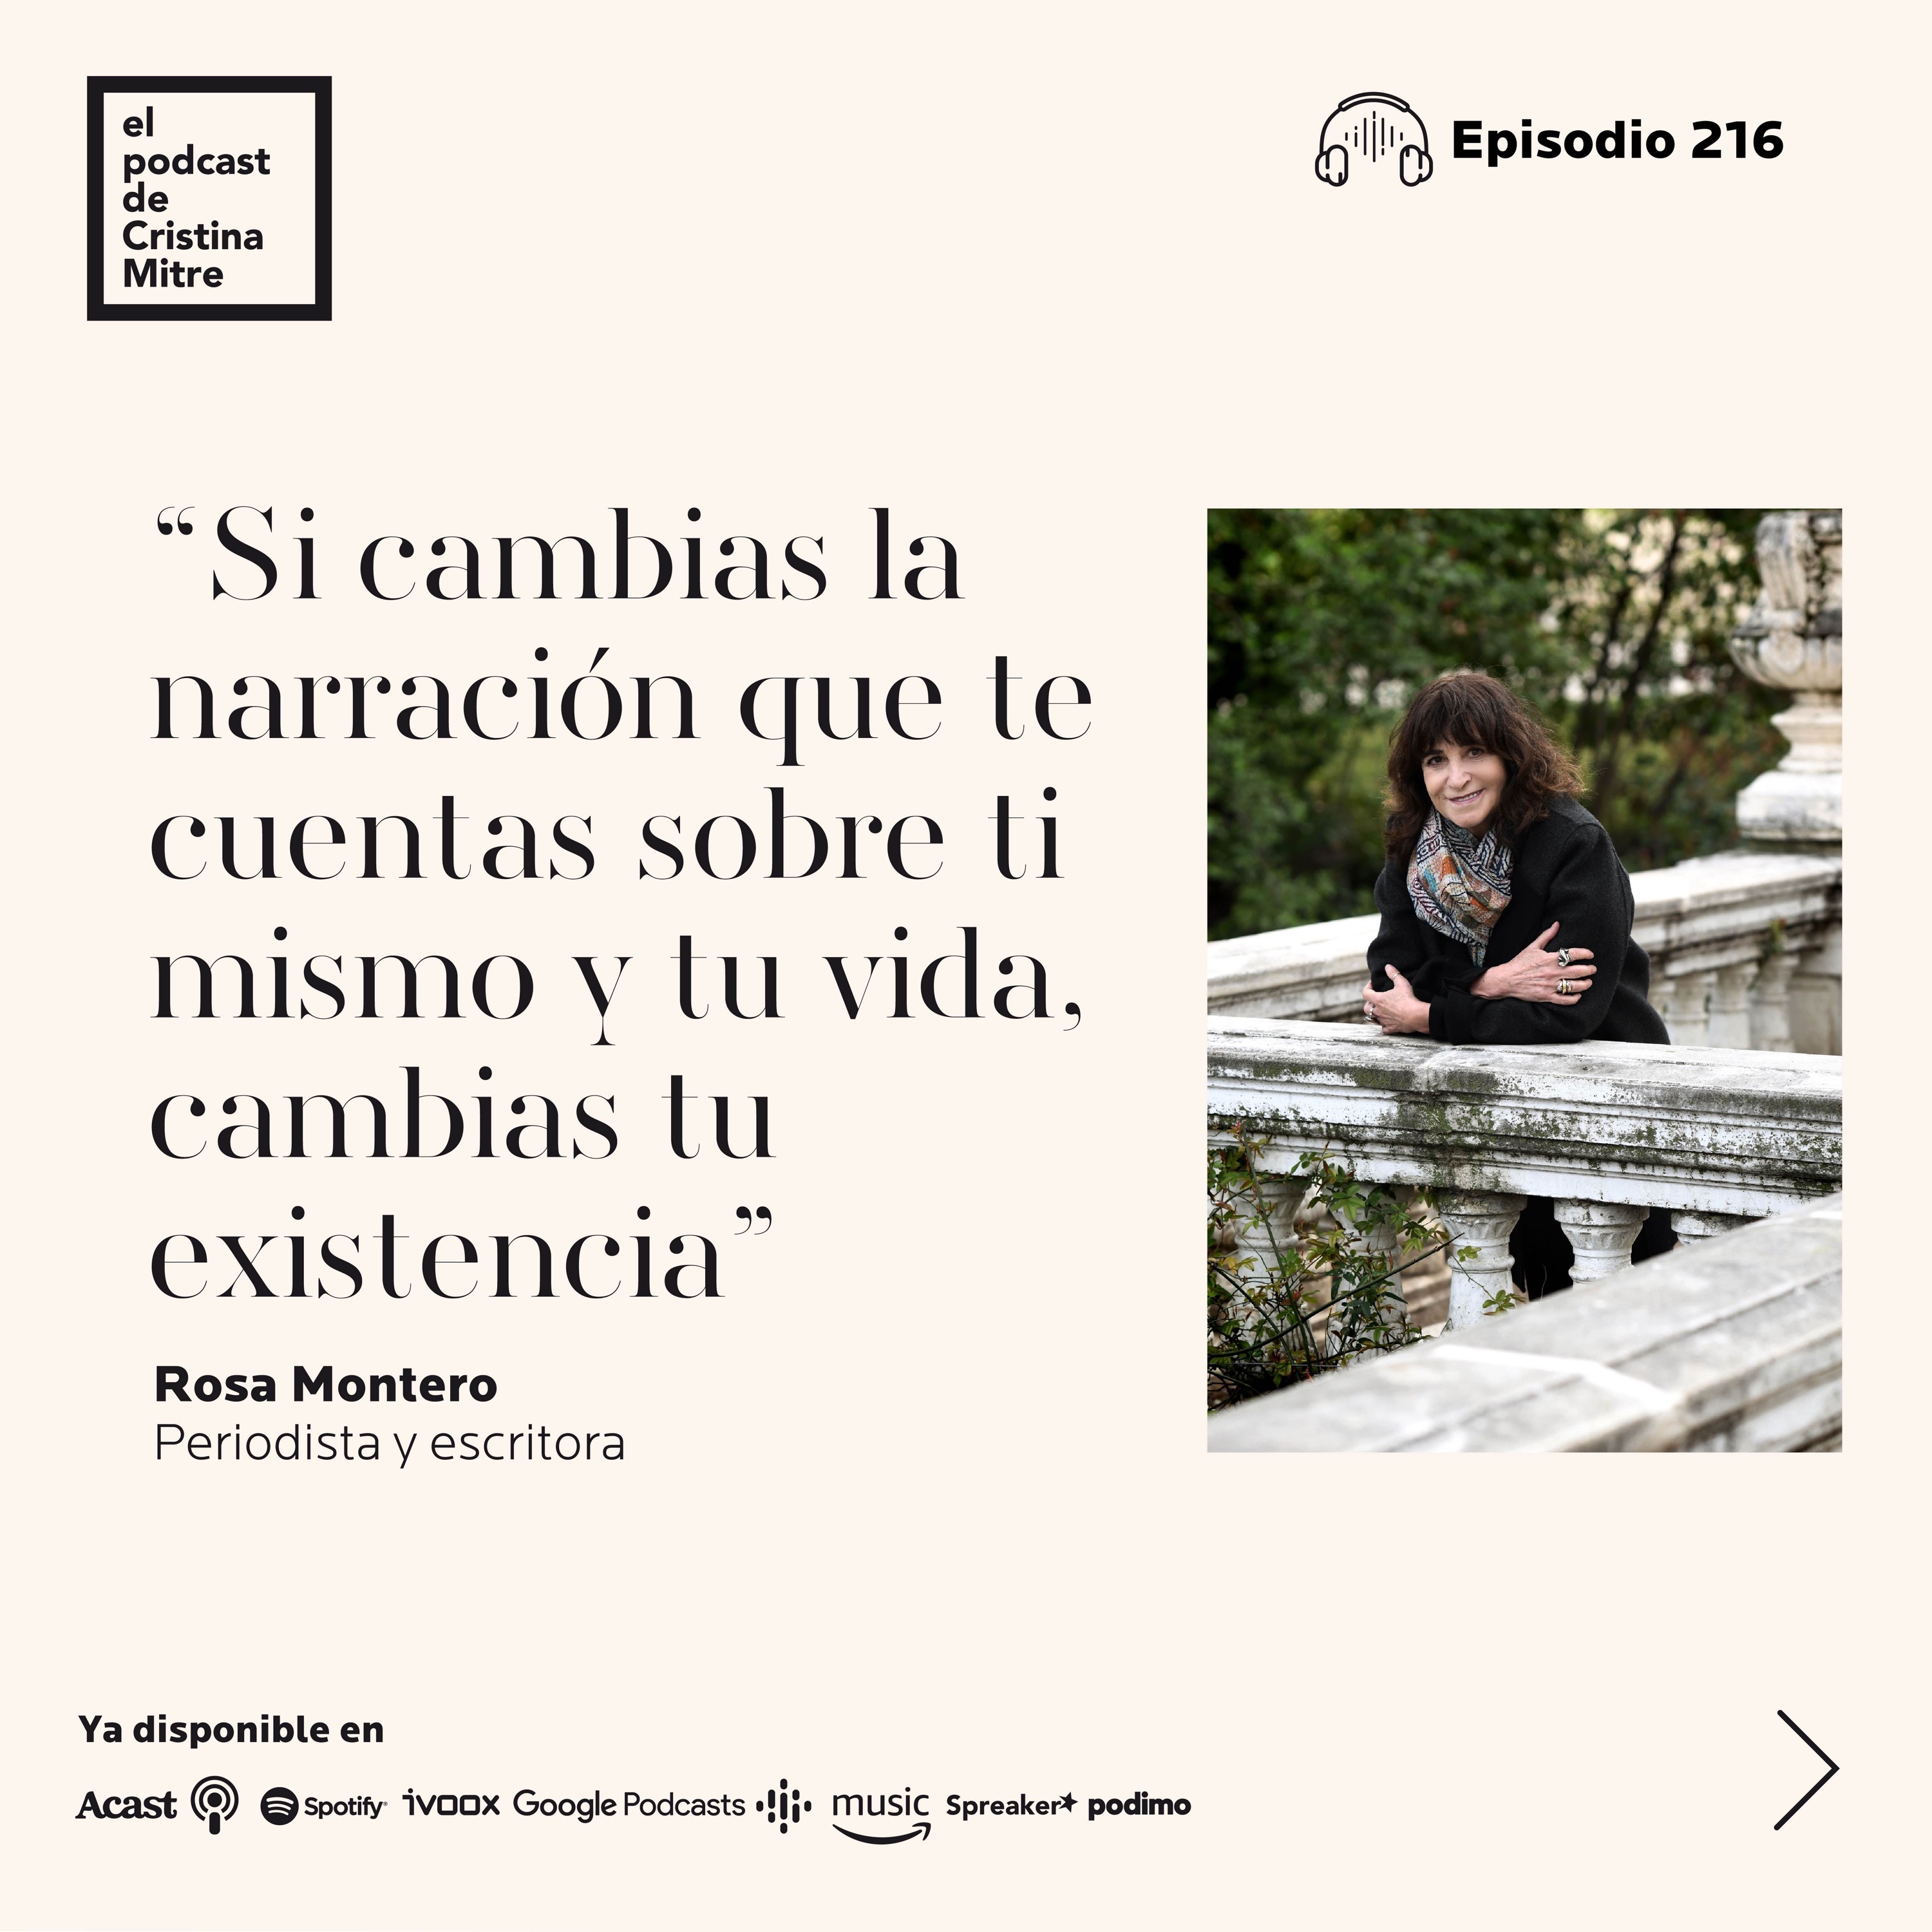 La trampa de la felicidad y la psicología positiva, con Edgar Cabanas.  Episodio 290 - El podcast de Cristina Mitre